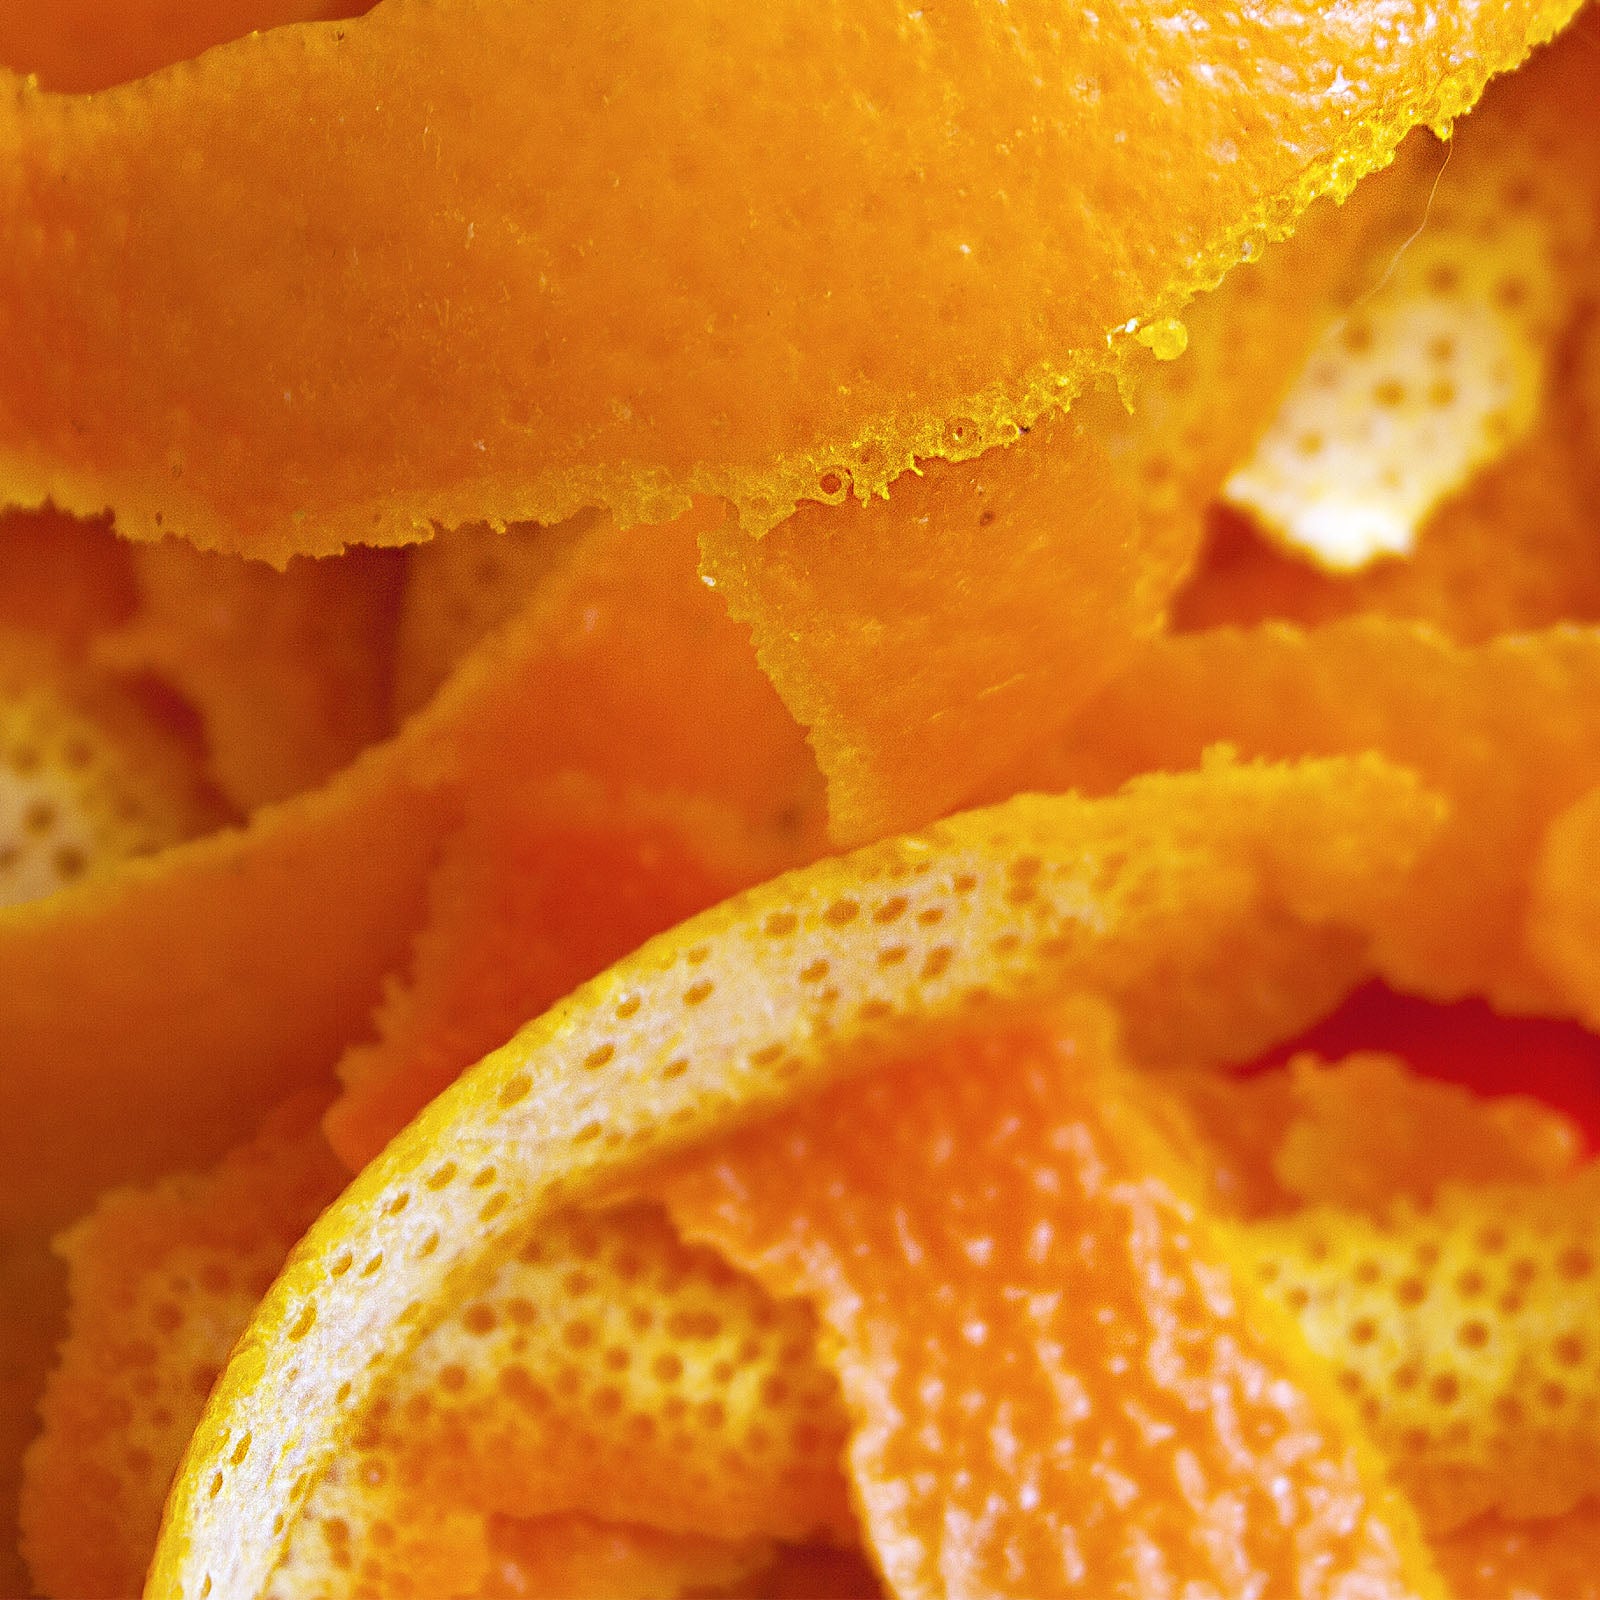 Citrus aurantium dulcis (orange) peel powder